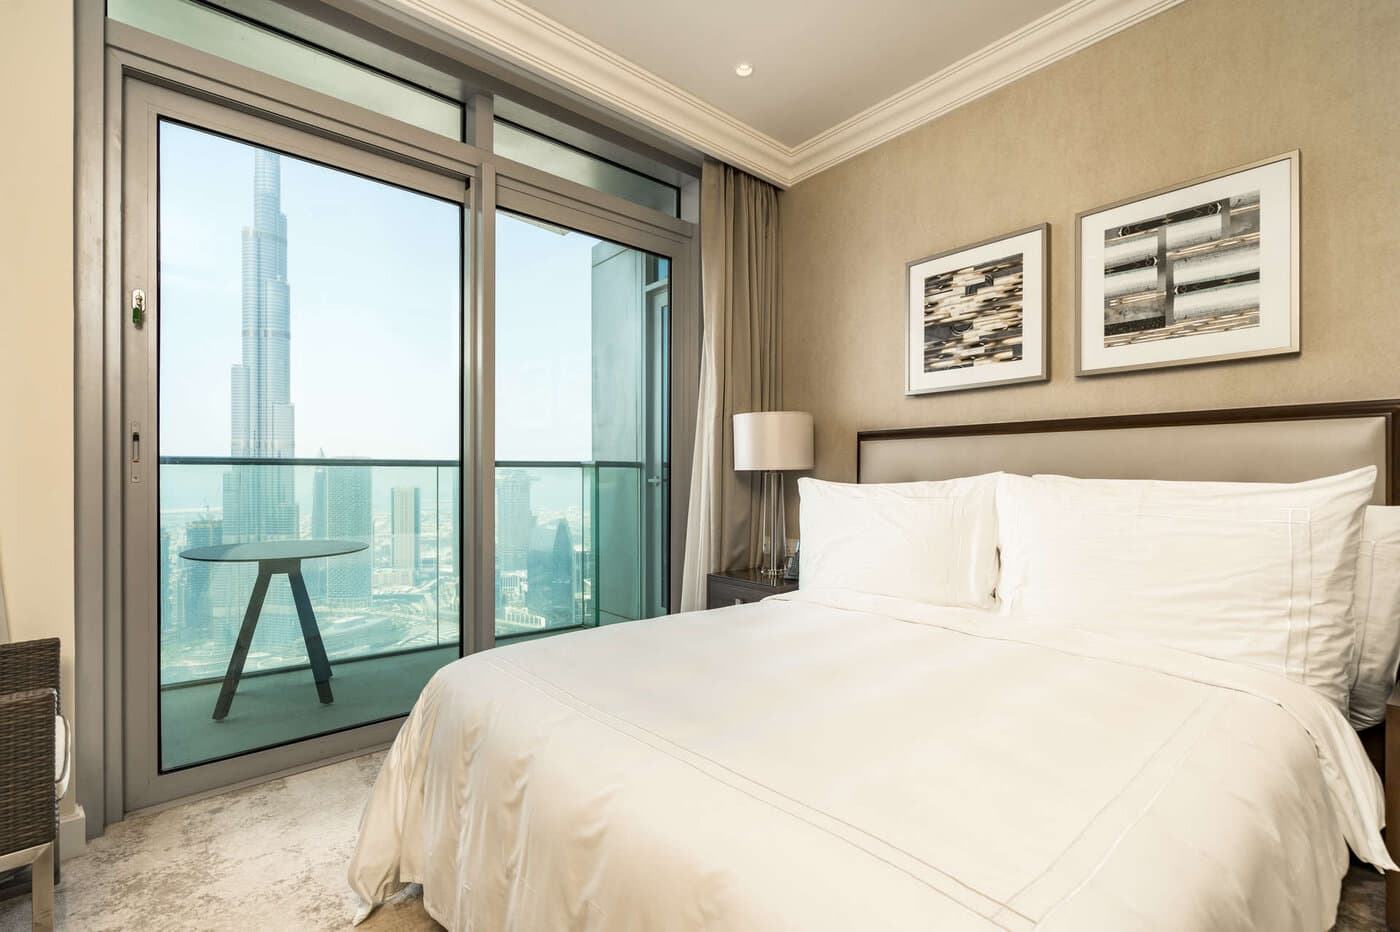 Apartments with a Burj Khalifa View